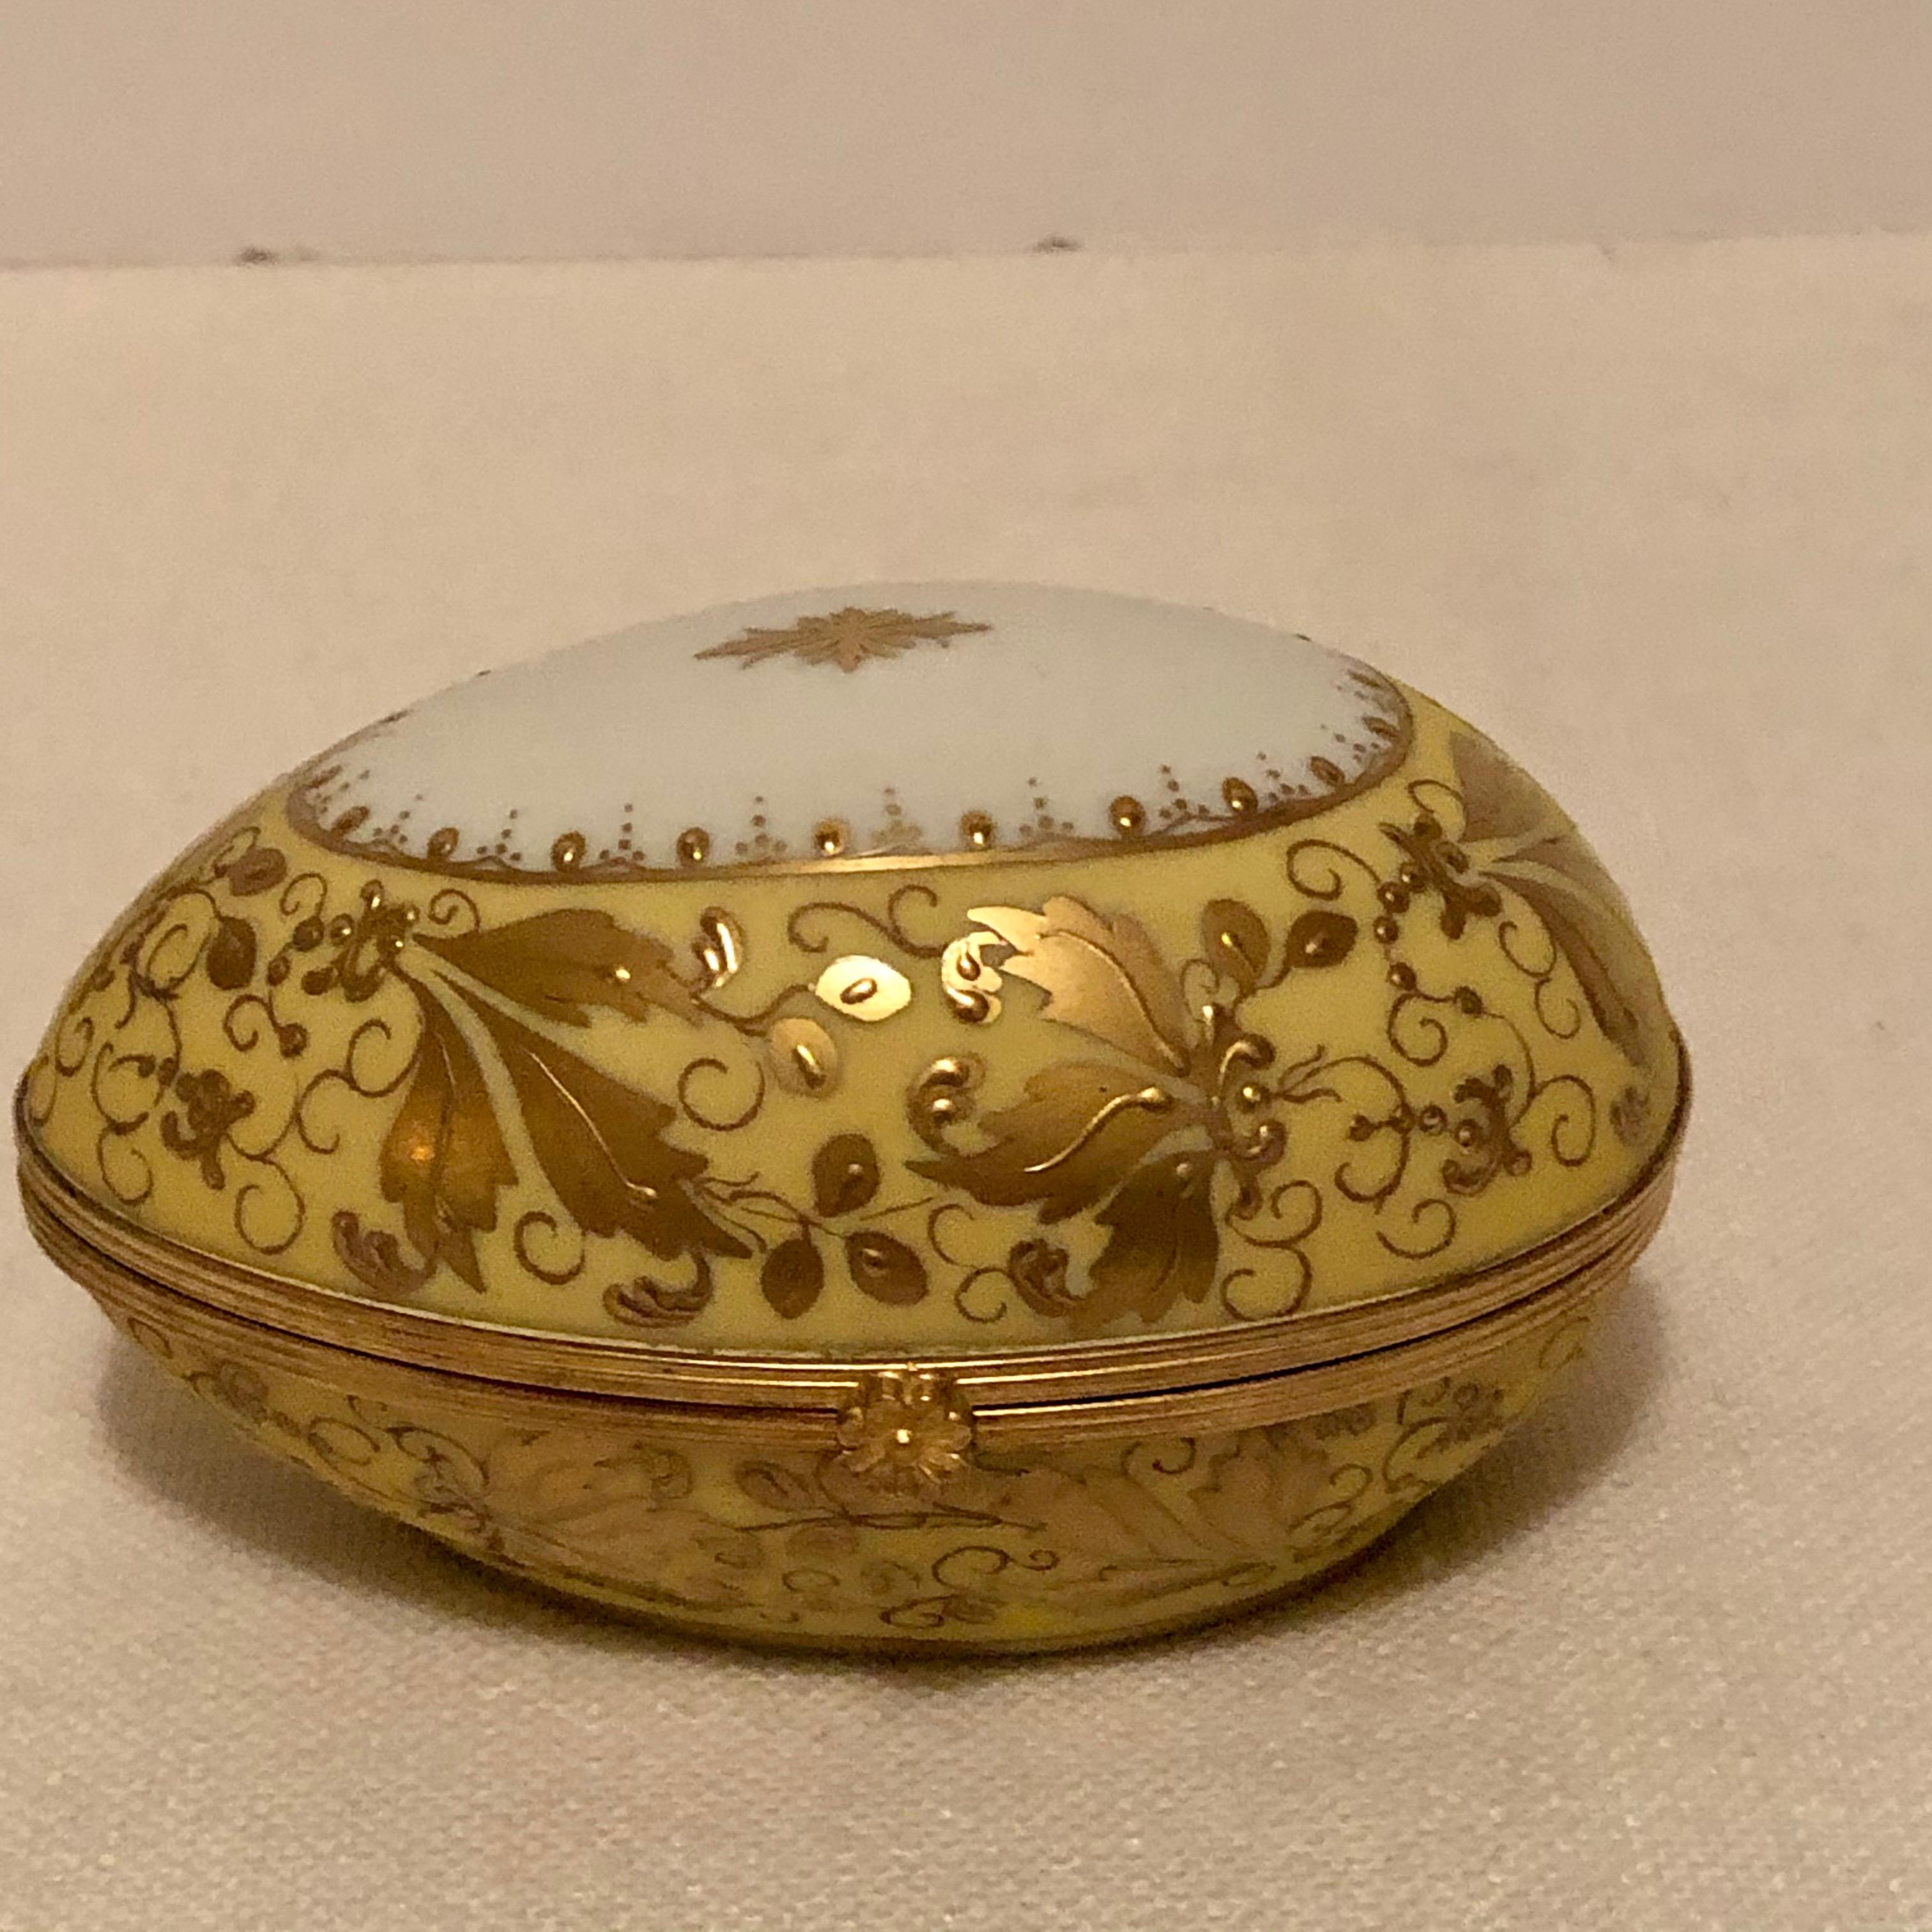 Belle Époque Le Tallec Porcelain Egg Shaped Box Decorated with Exquisite Raised Gilding